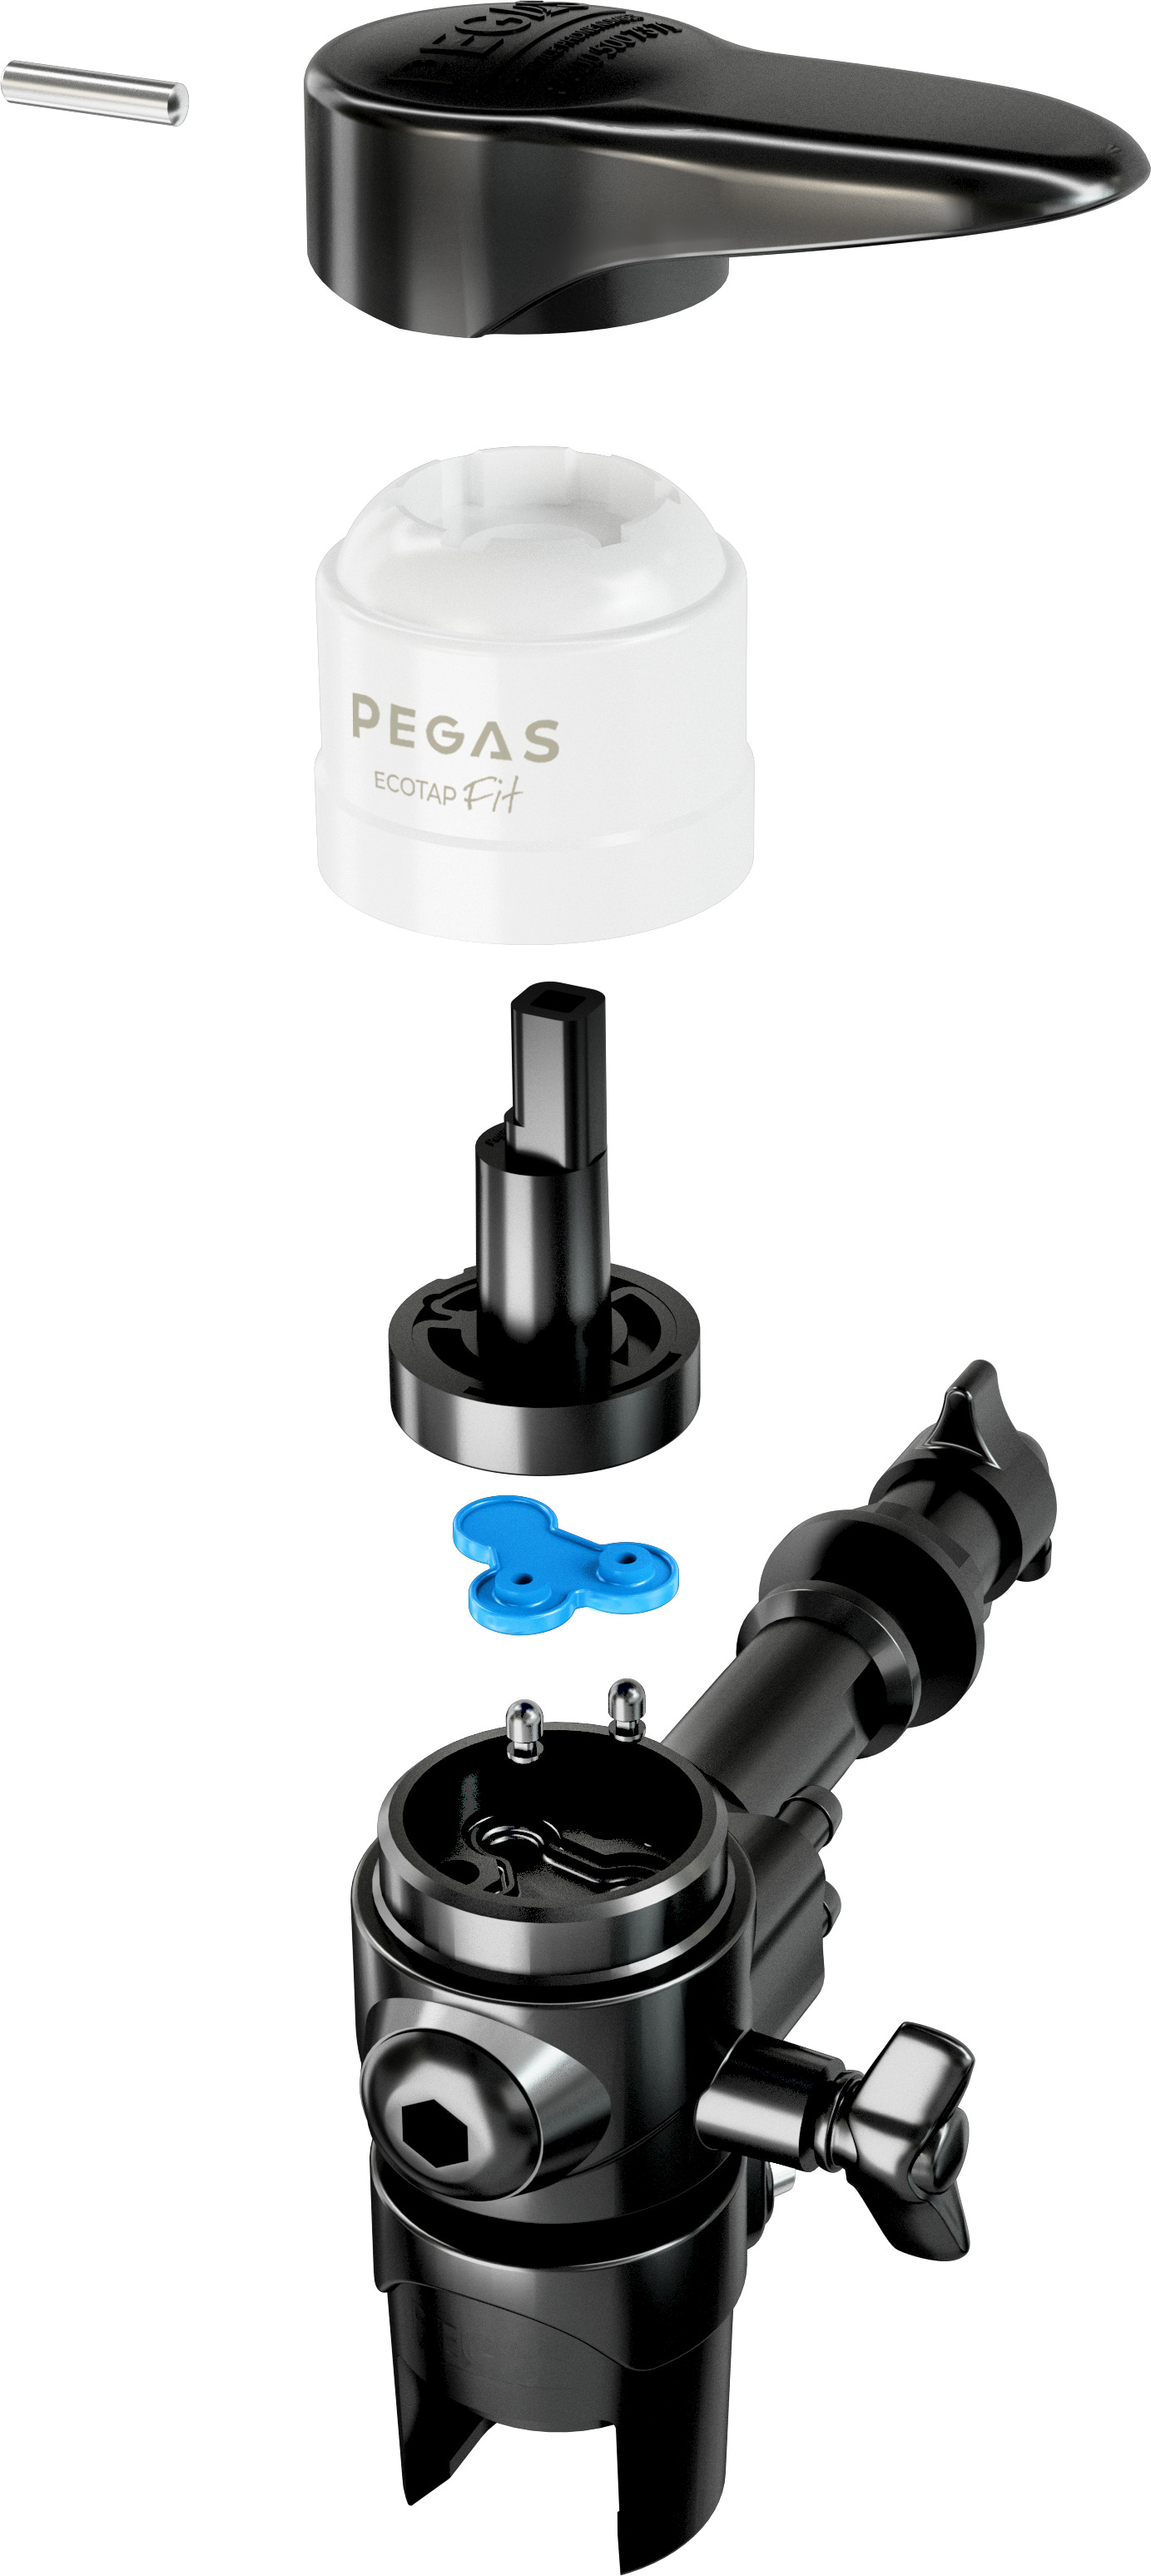 Пеногаситель Pegas Ecotap Fit. Антипонсилан пеногаситель. Пеногаситель Пента-465 (канистра 20 кг). Пеногаситель в сепараторе.